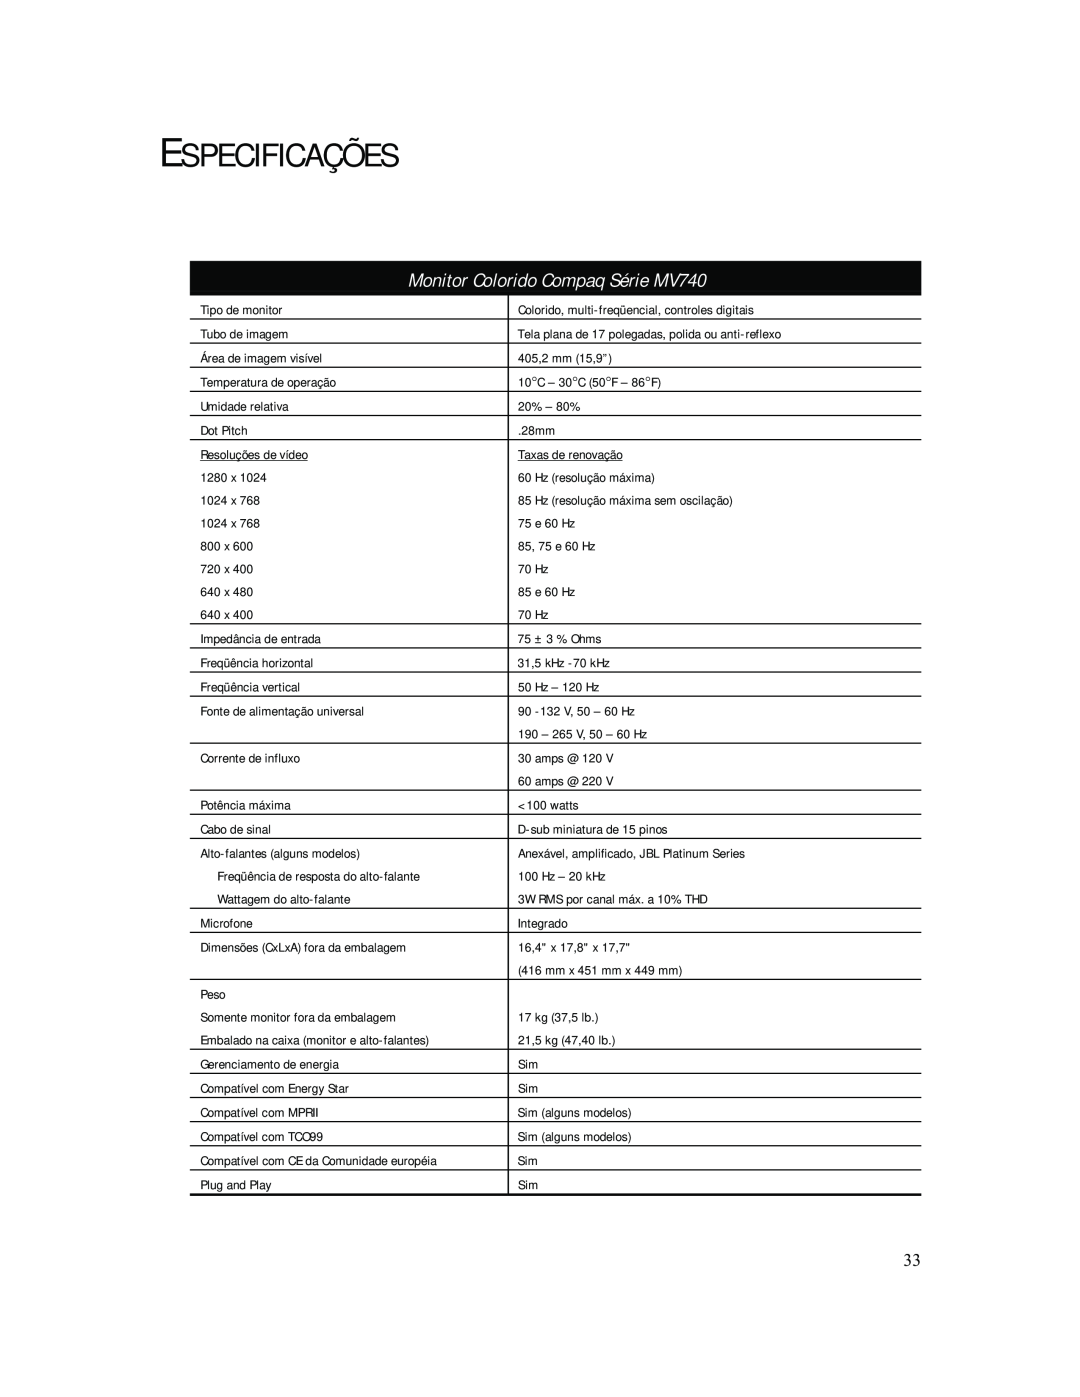 Compaq manual Especificações, Monitor Colorido Compaq Série MV740 